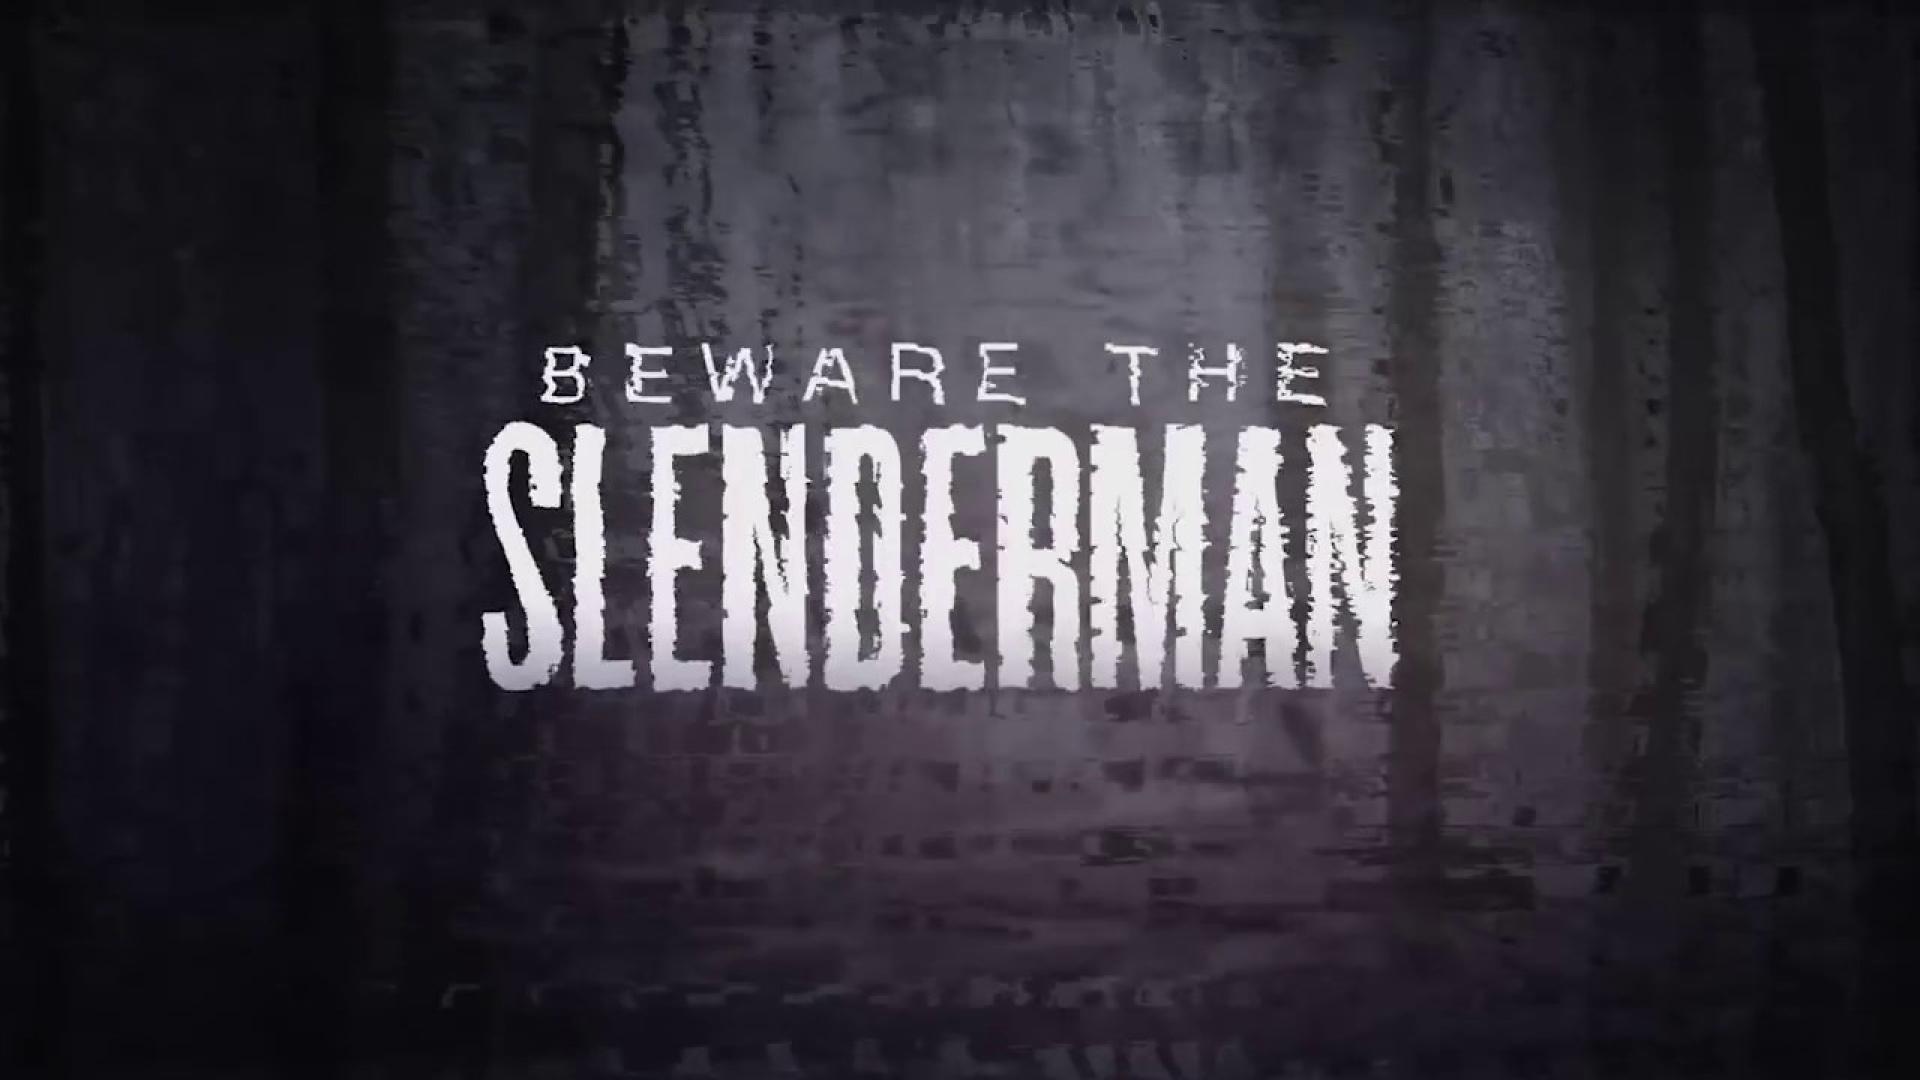 Beware the Slenderman / Slenderman: Az internet réme életre kel (2016)